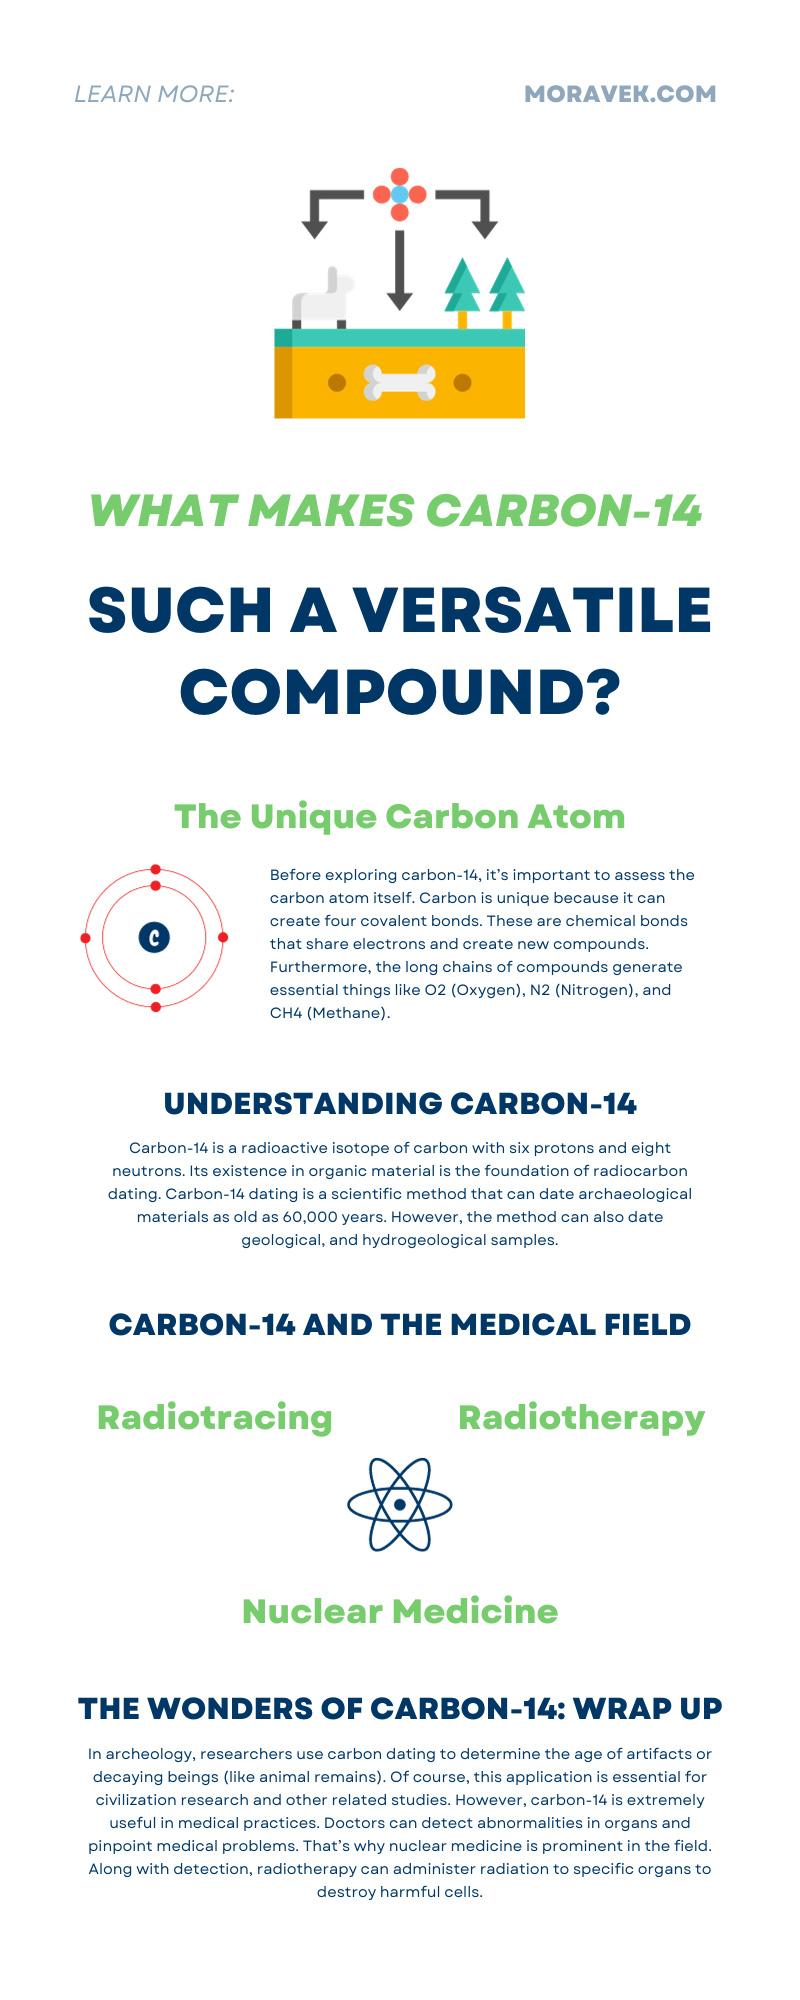 What Makes Carbon-14 Such a Versatile Compound?